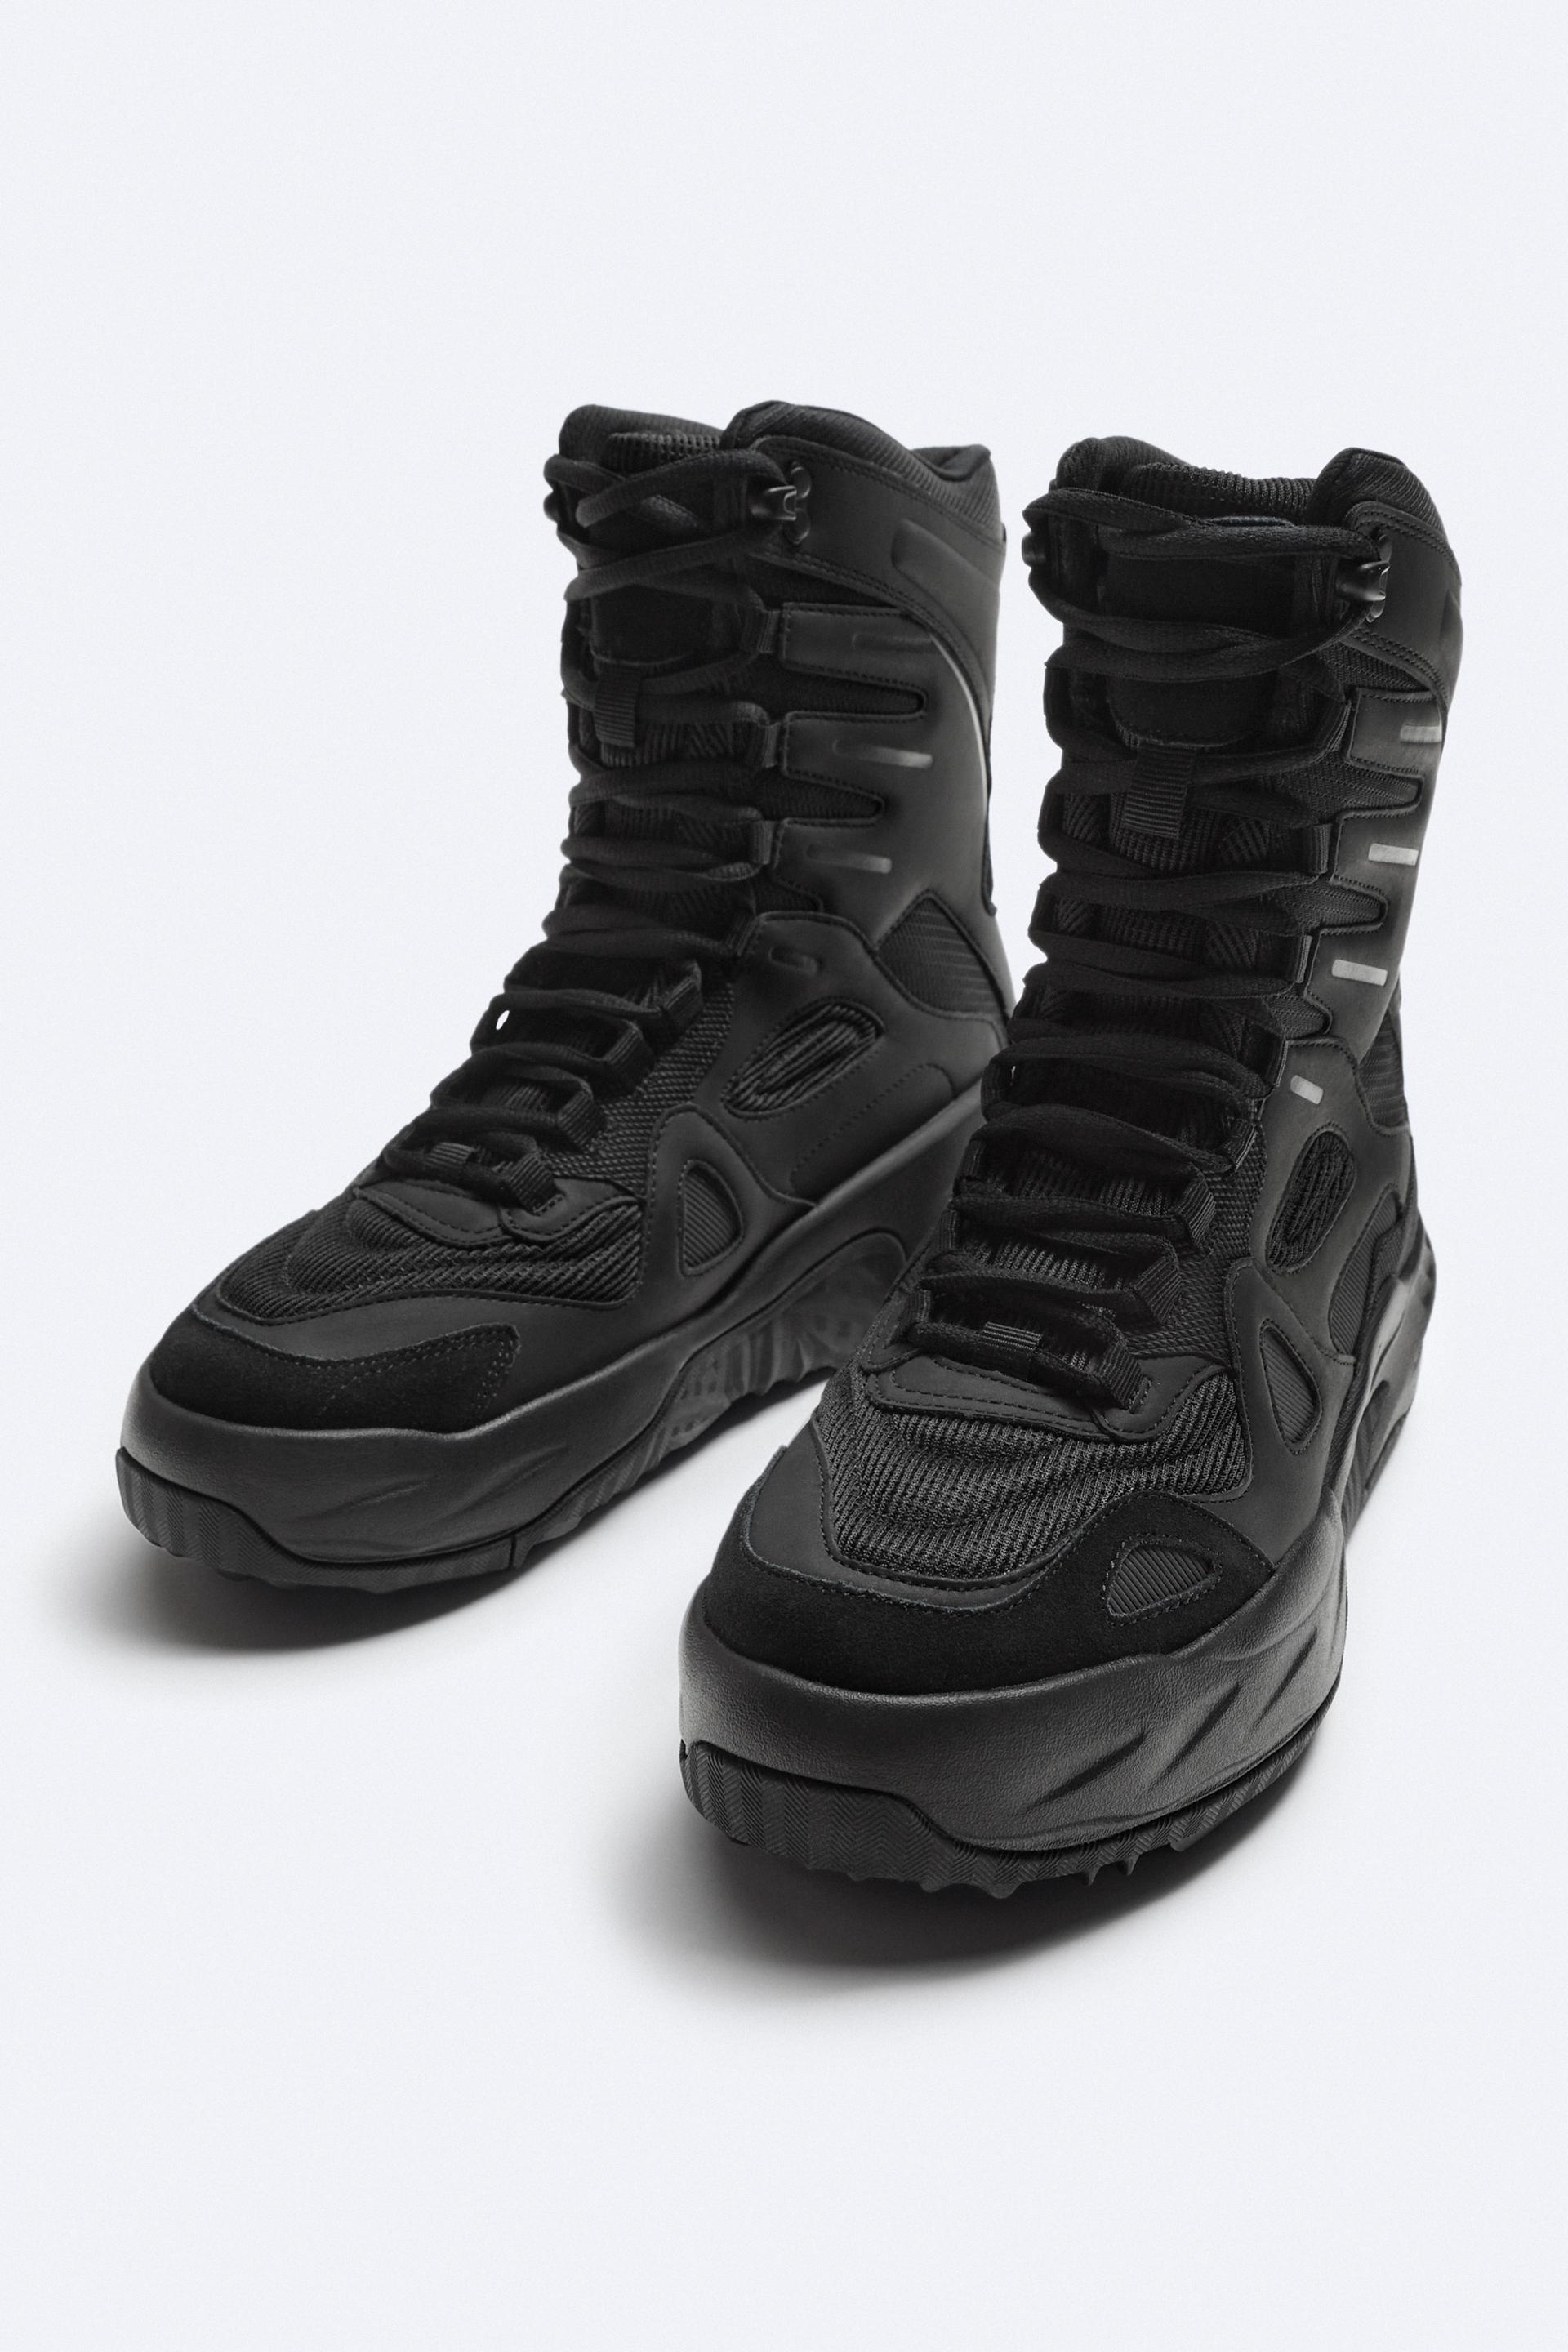 NEW) ZARA Concept High Top Sneakers Men's Size 12 Black